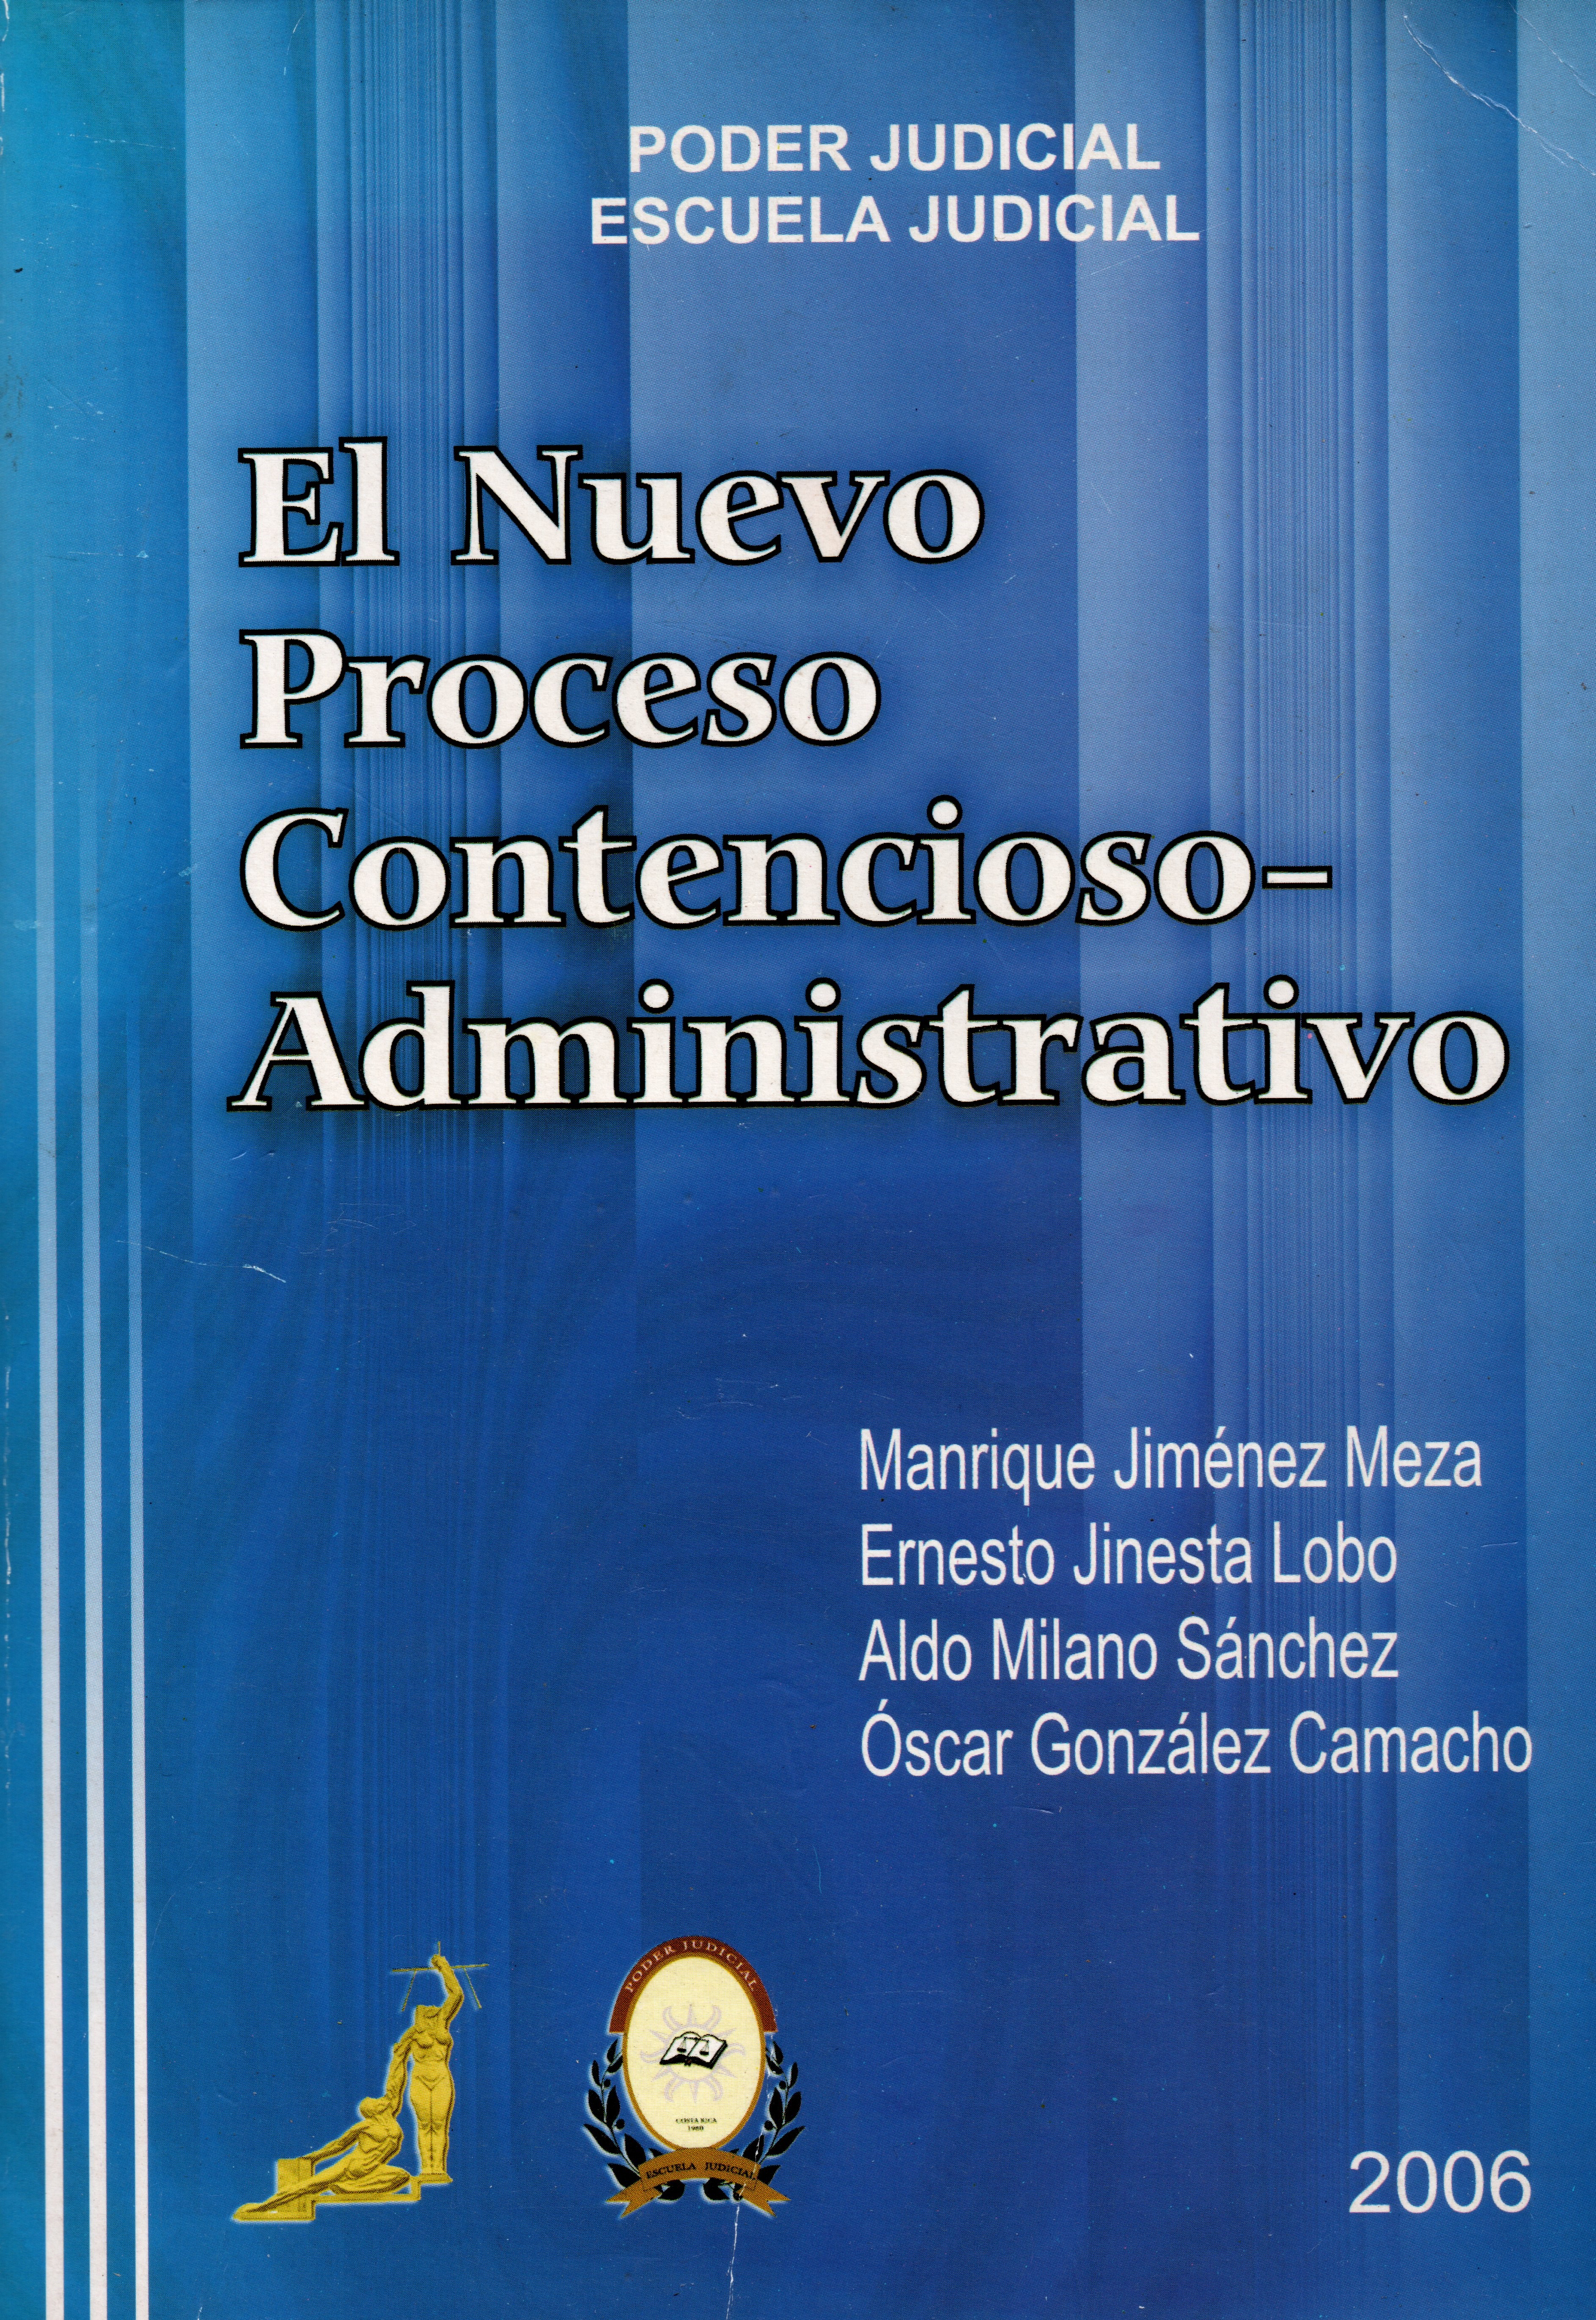 El nuevo proceso contencioso-administrativo